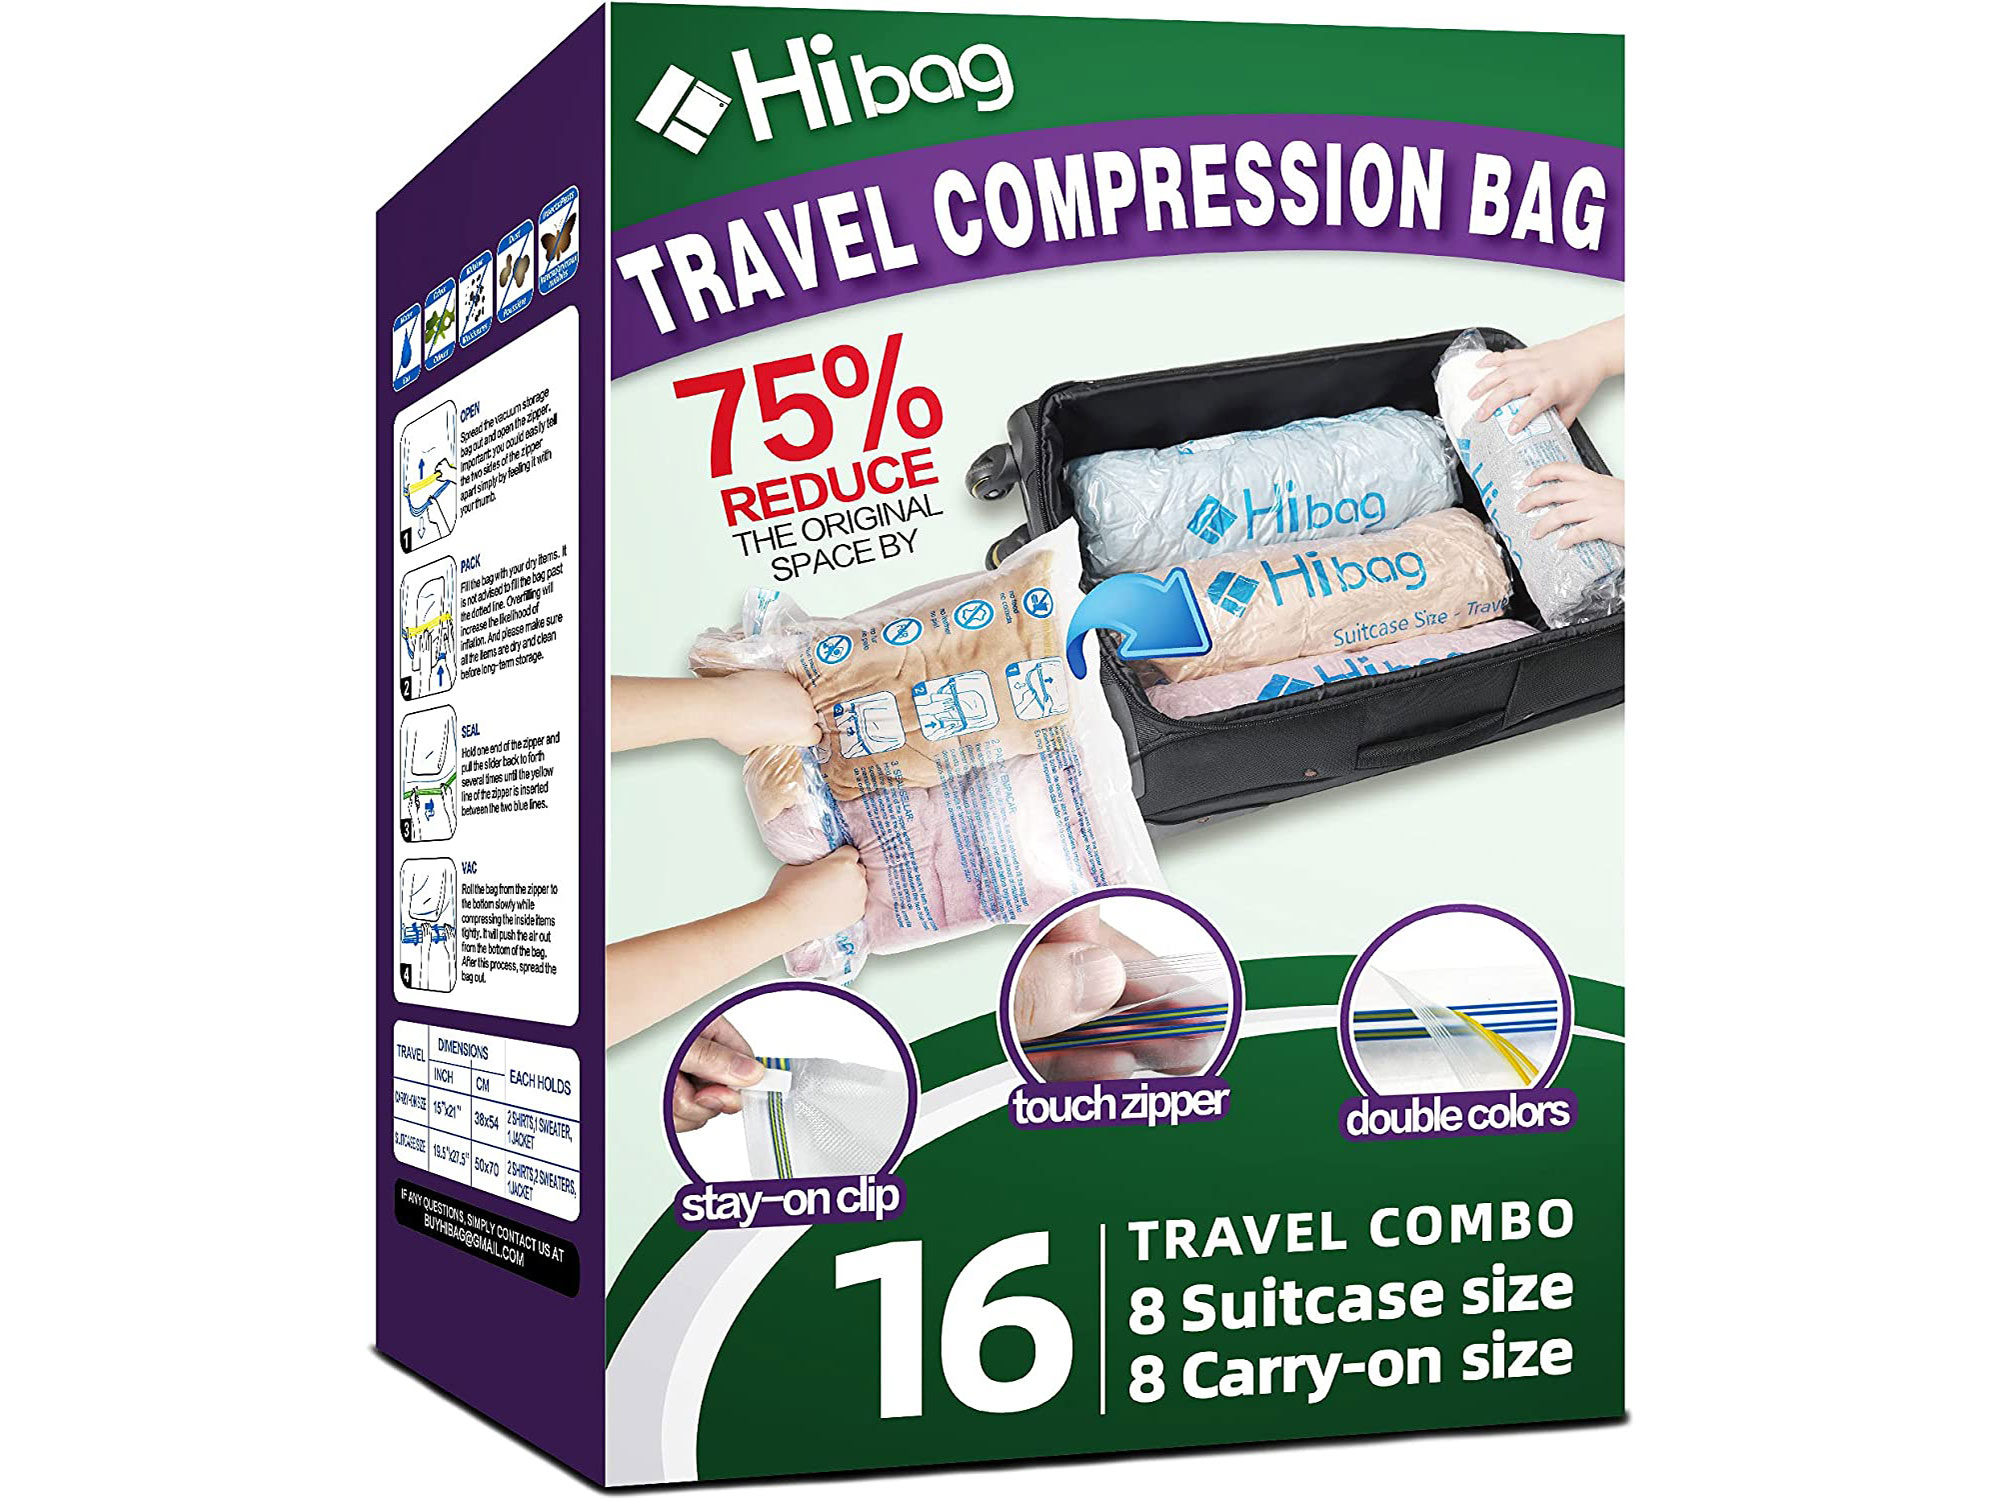 HiBag compression bags